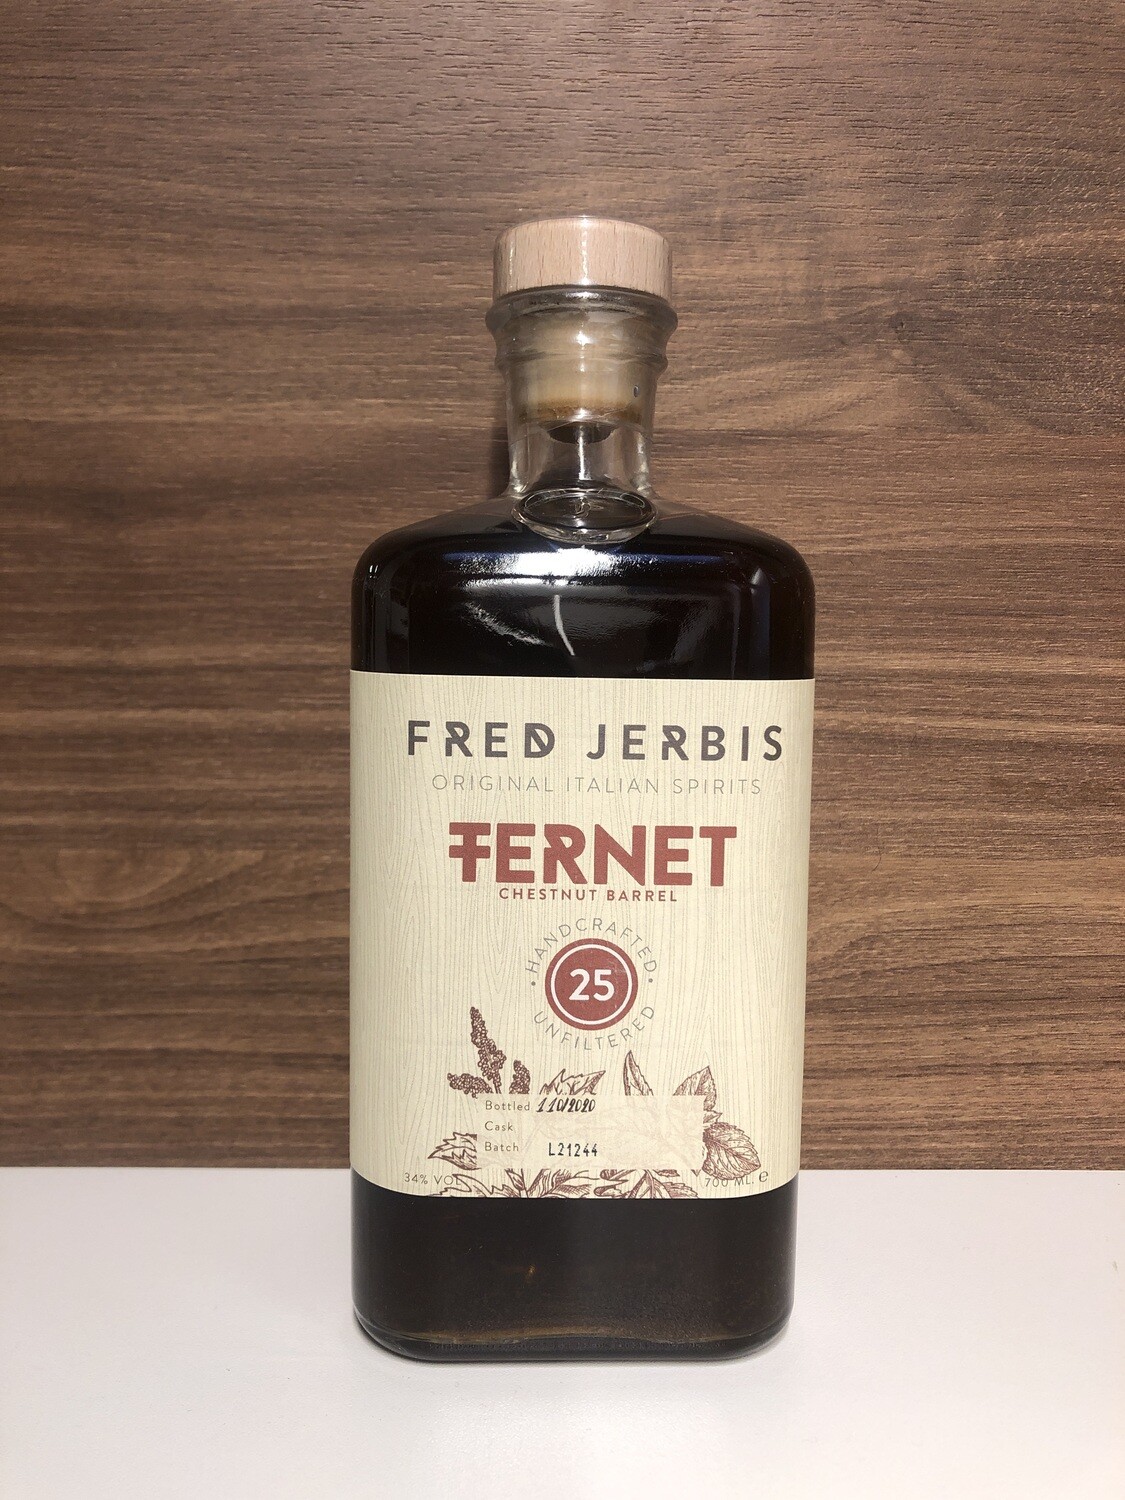 Fred Jerbis Fernet 25 Chestnut barrel